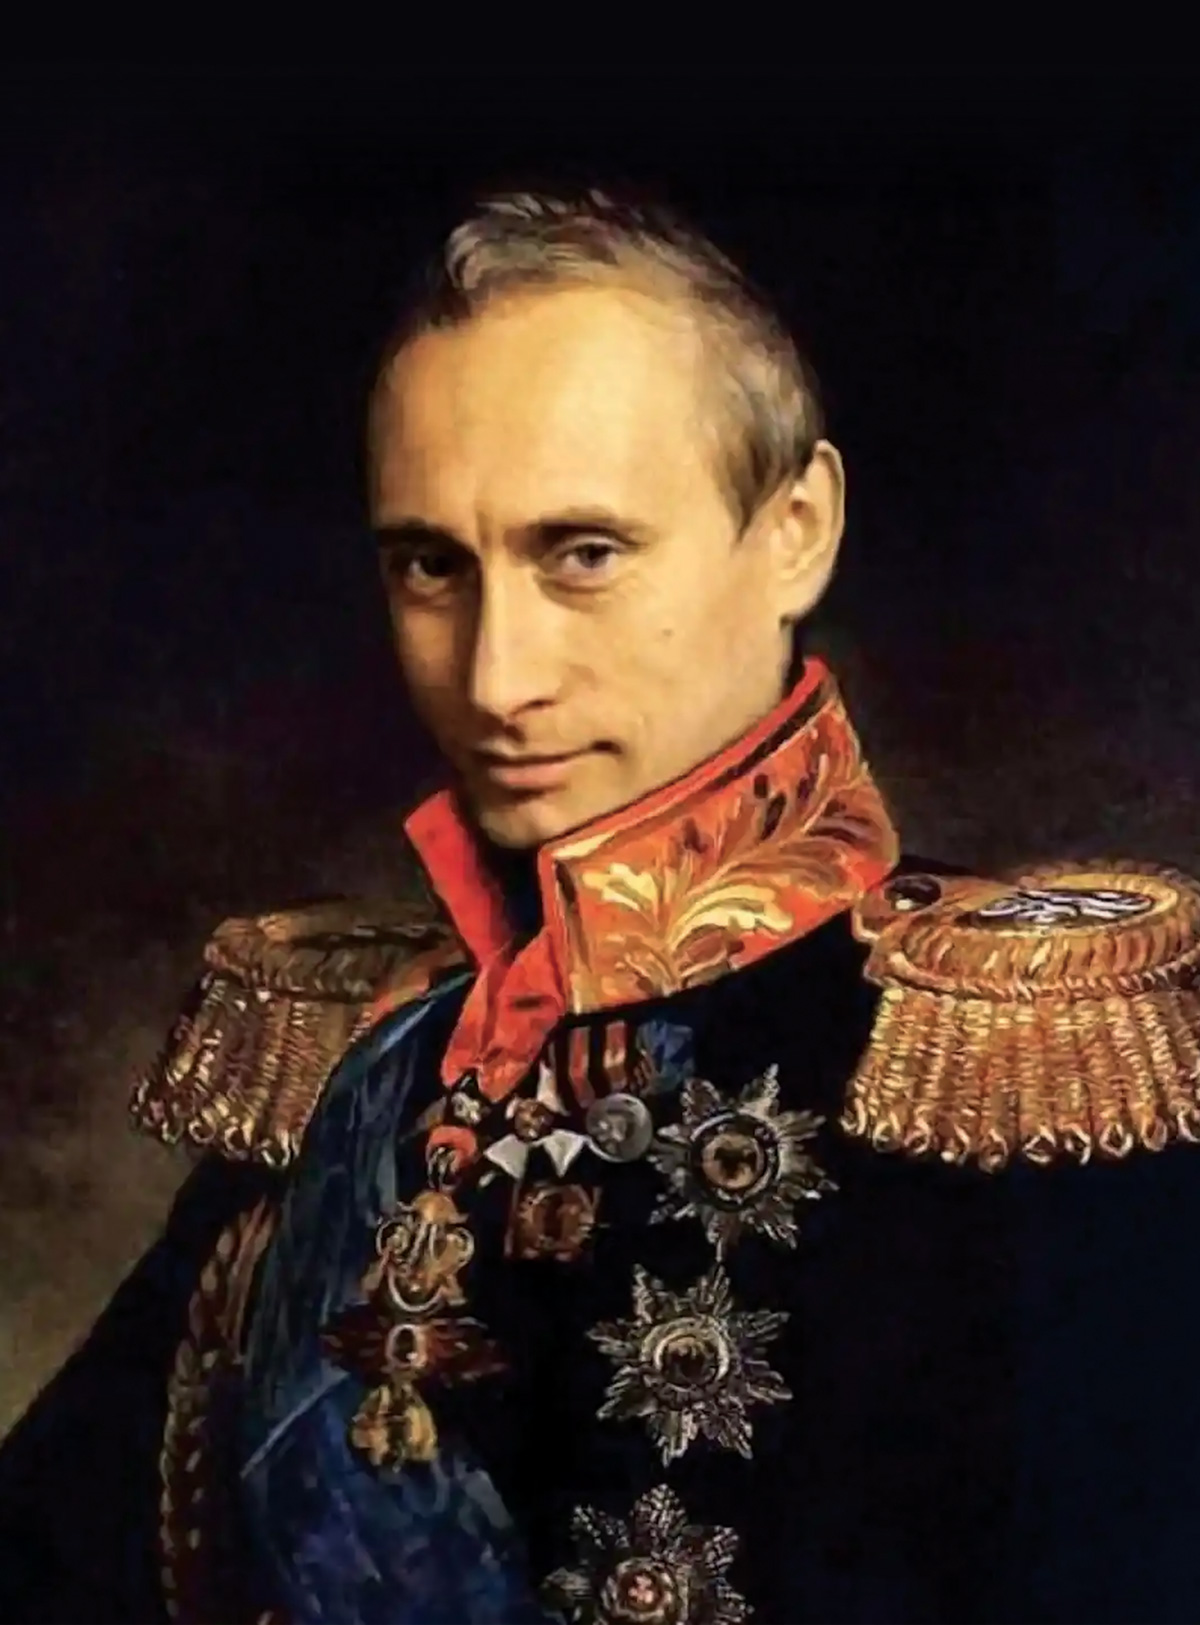 Vladimir Putin in the likeness of Prussian General Carl von Clausewitz. Clausewitz